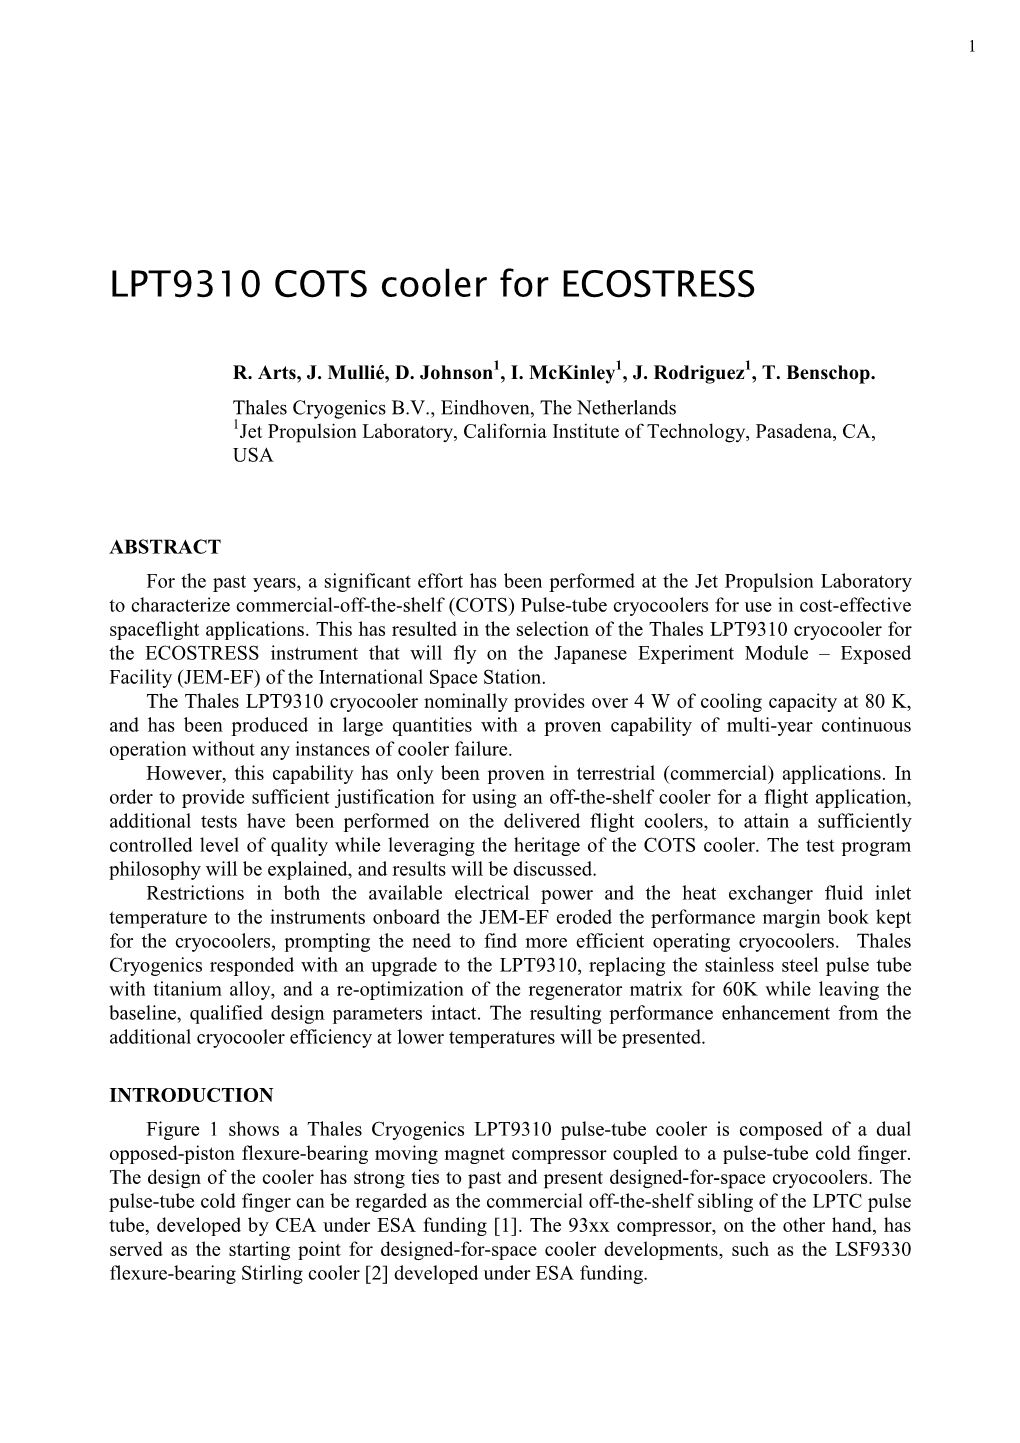 LPT9310 COTS Cooler for ECOSTRESS